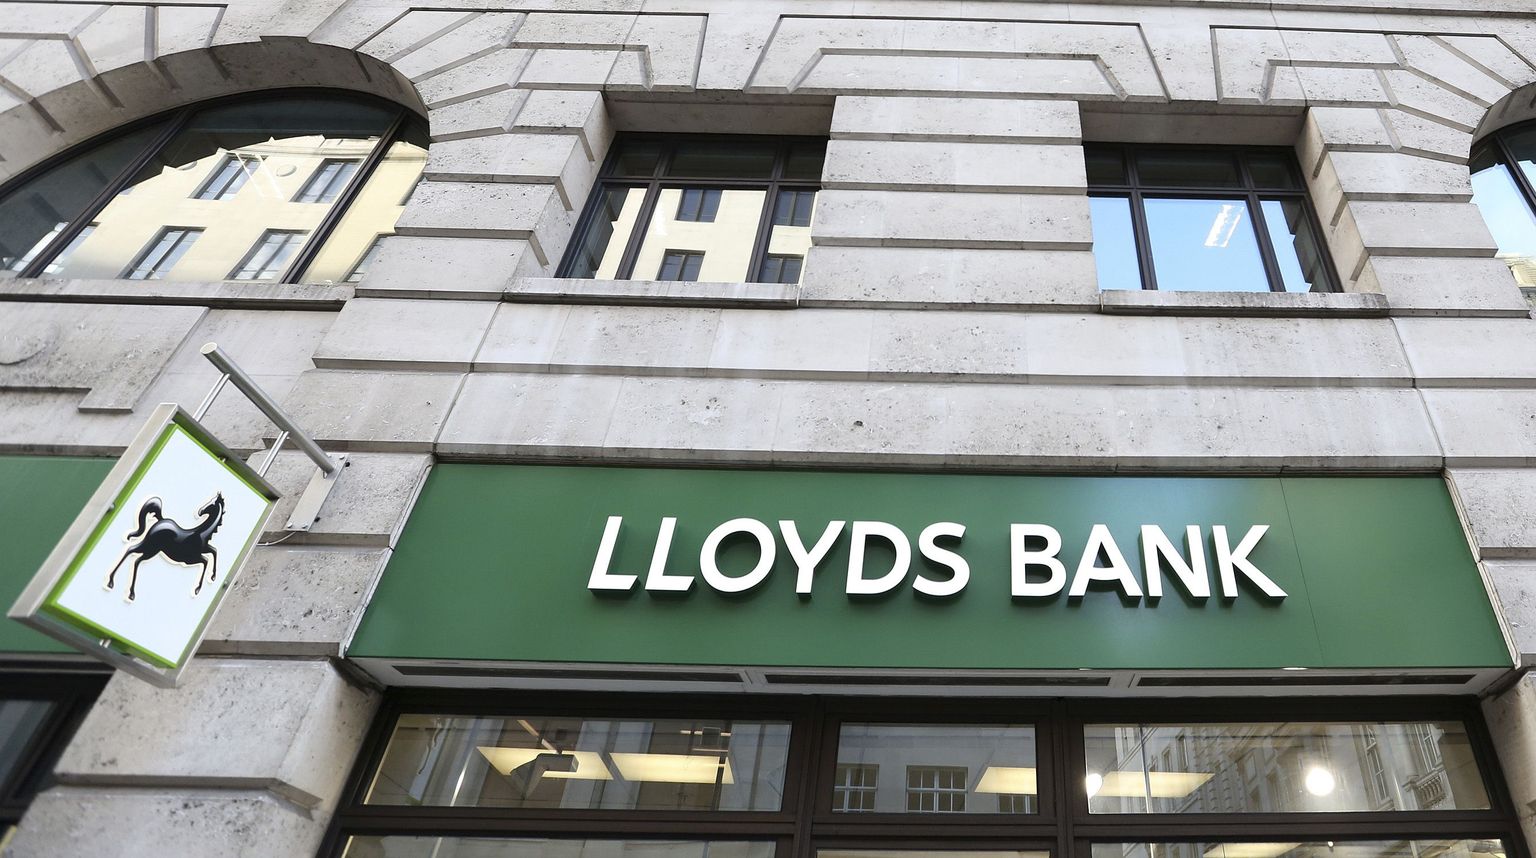 Suurbritannia ühe suurema panga, Lloyds juhtide töötasu ületab panga keskmiset 125 korda.